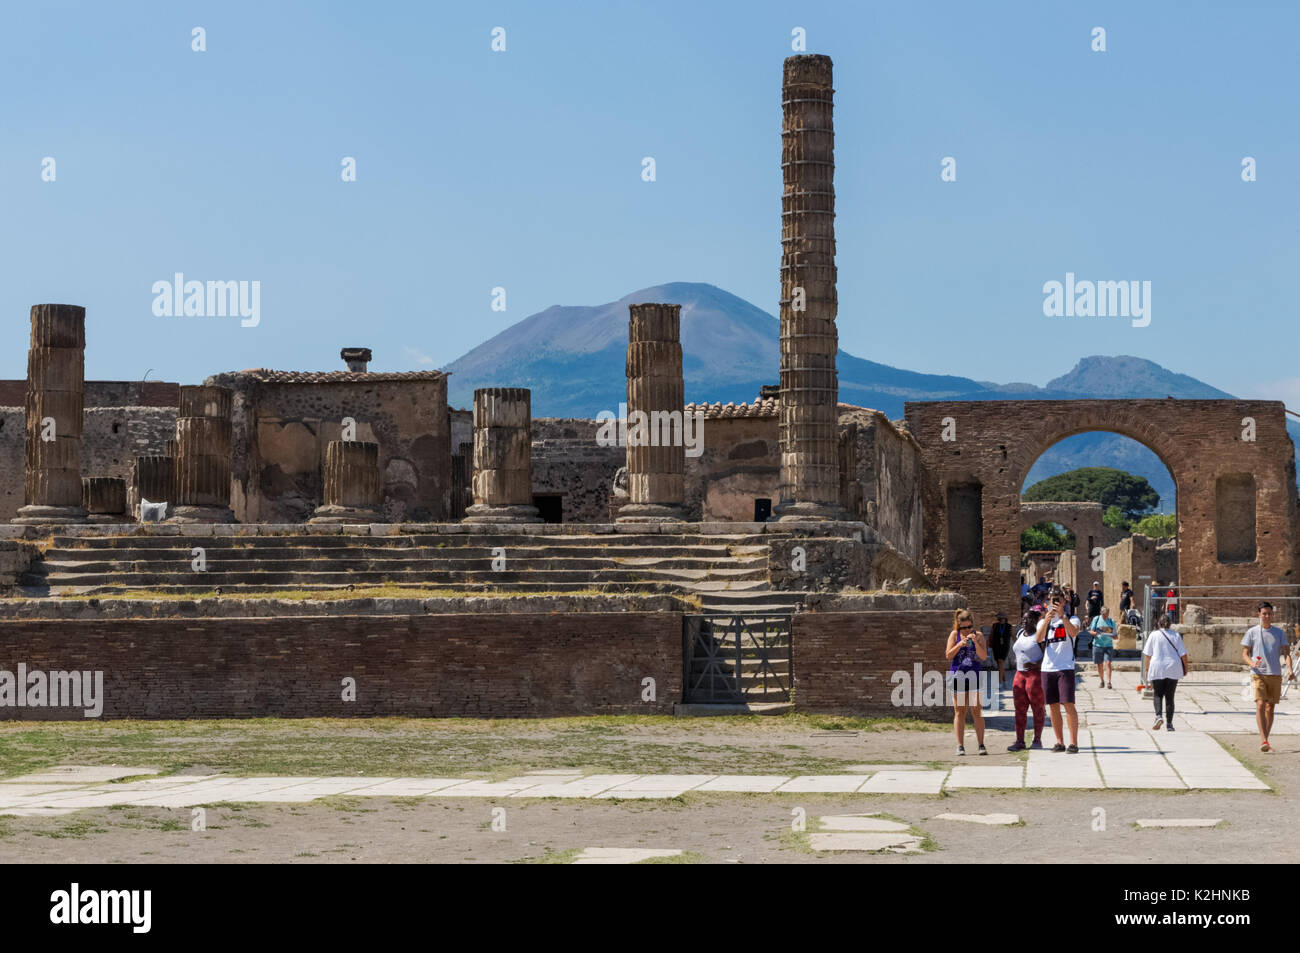 Les touristes visitant les ruines romaines de Pompéi, avec le Vésuve en arrière-plan, Italie Banque D'Images